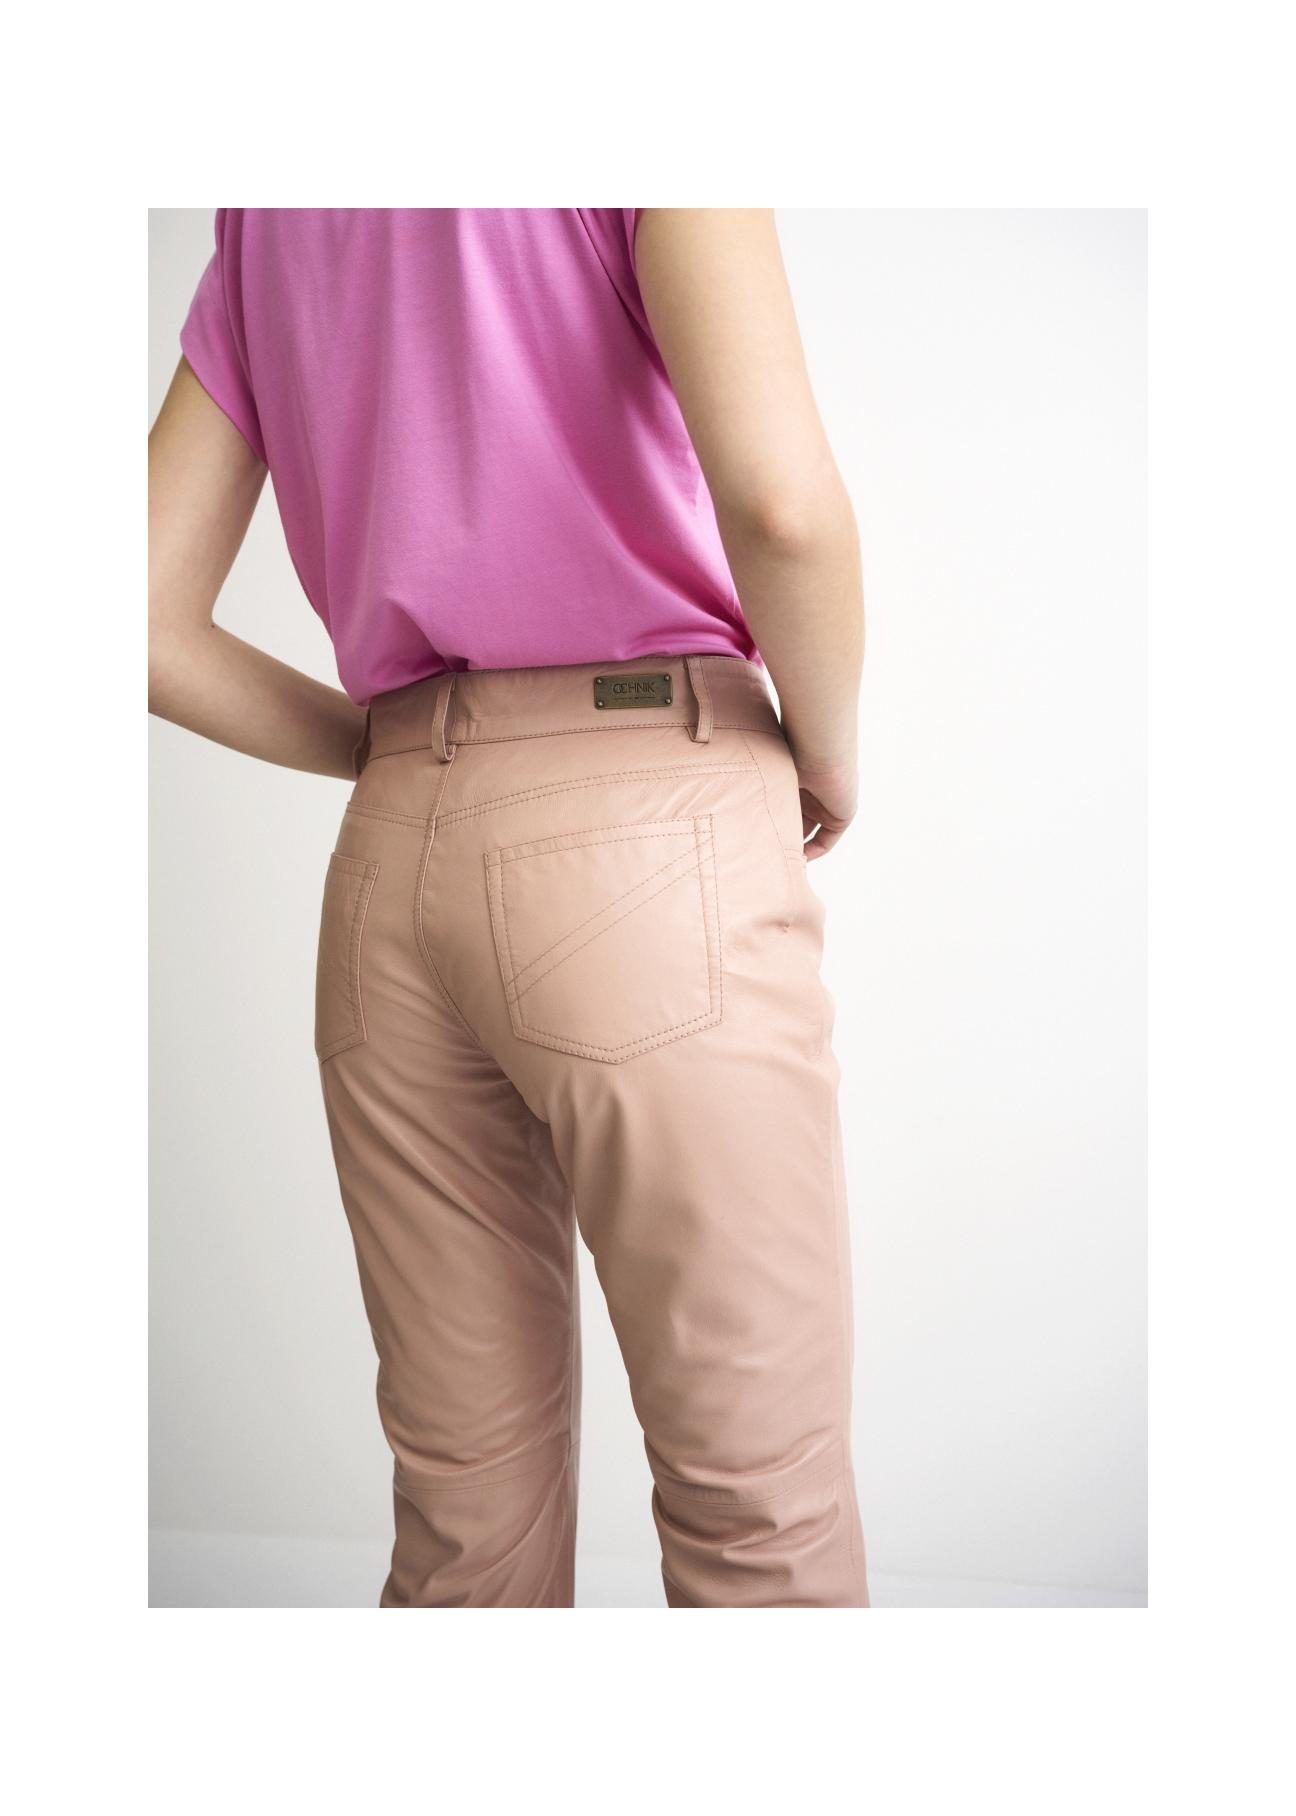 Spodnie skórzane beżowe damskie SPODS-0026-1187(W22)